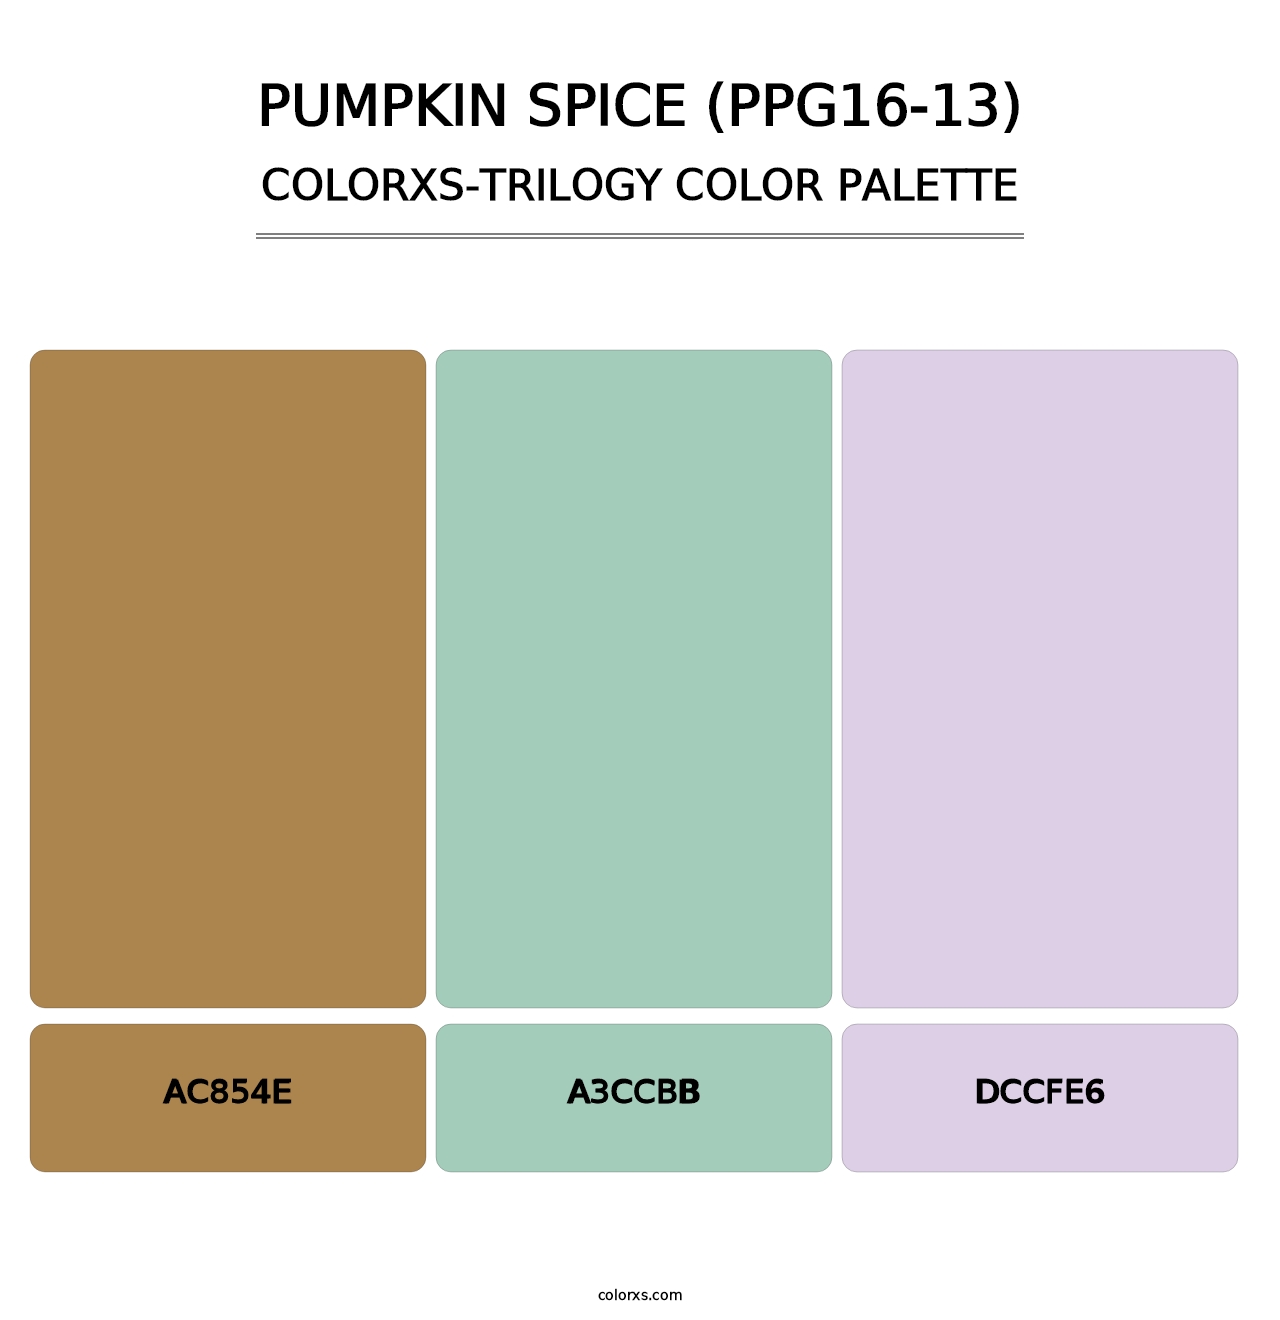 Pumpkin Spice (PPG16-13) - Colorxs Trilogy Palette